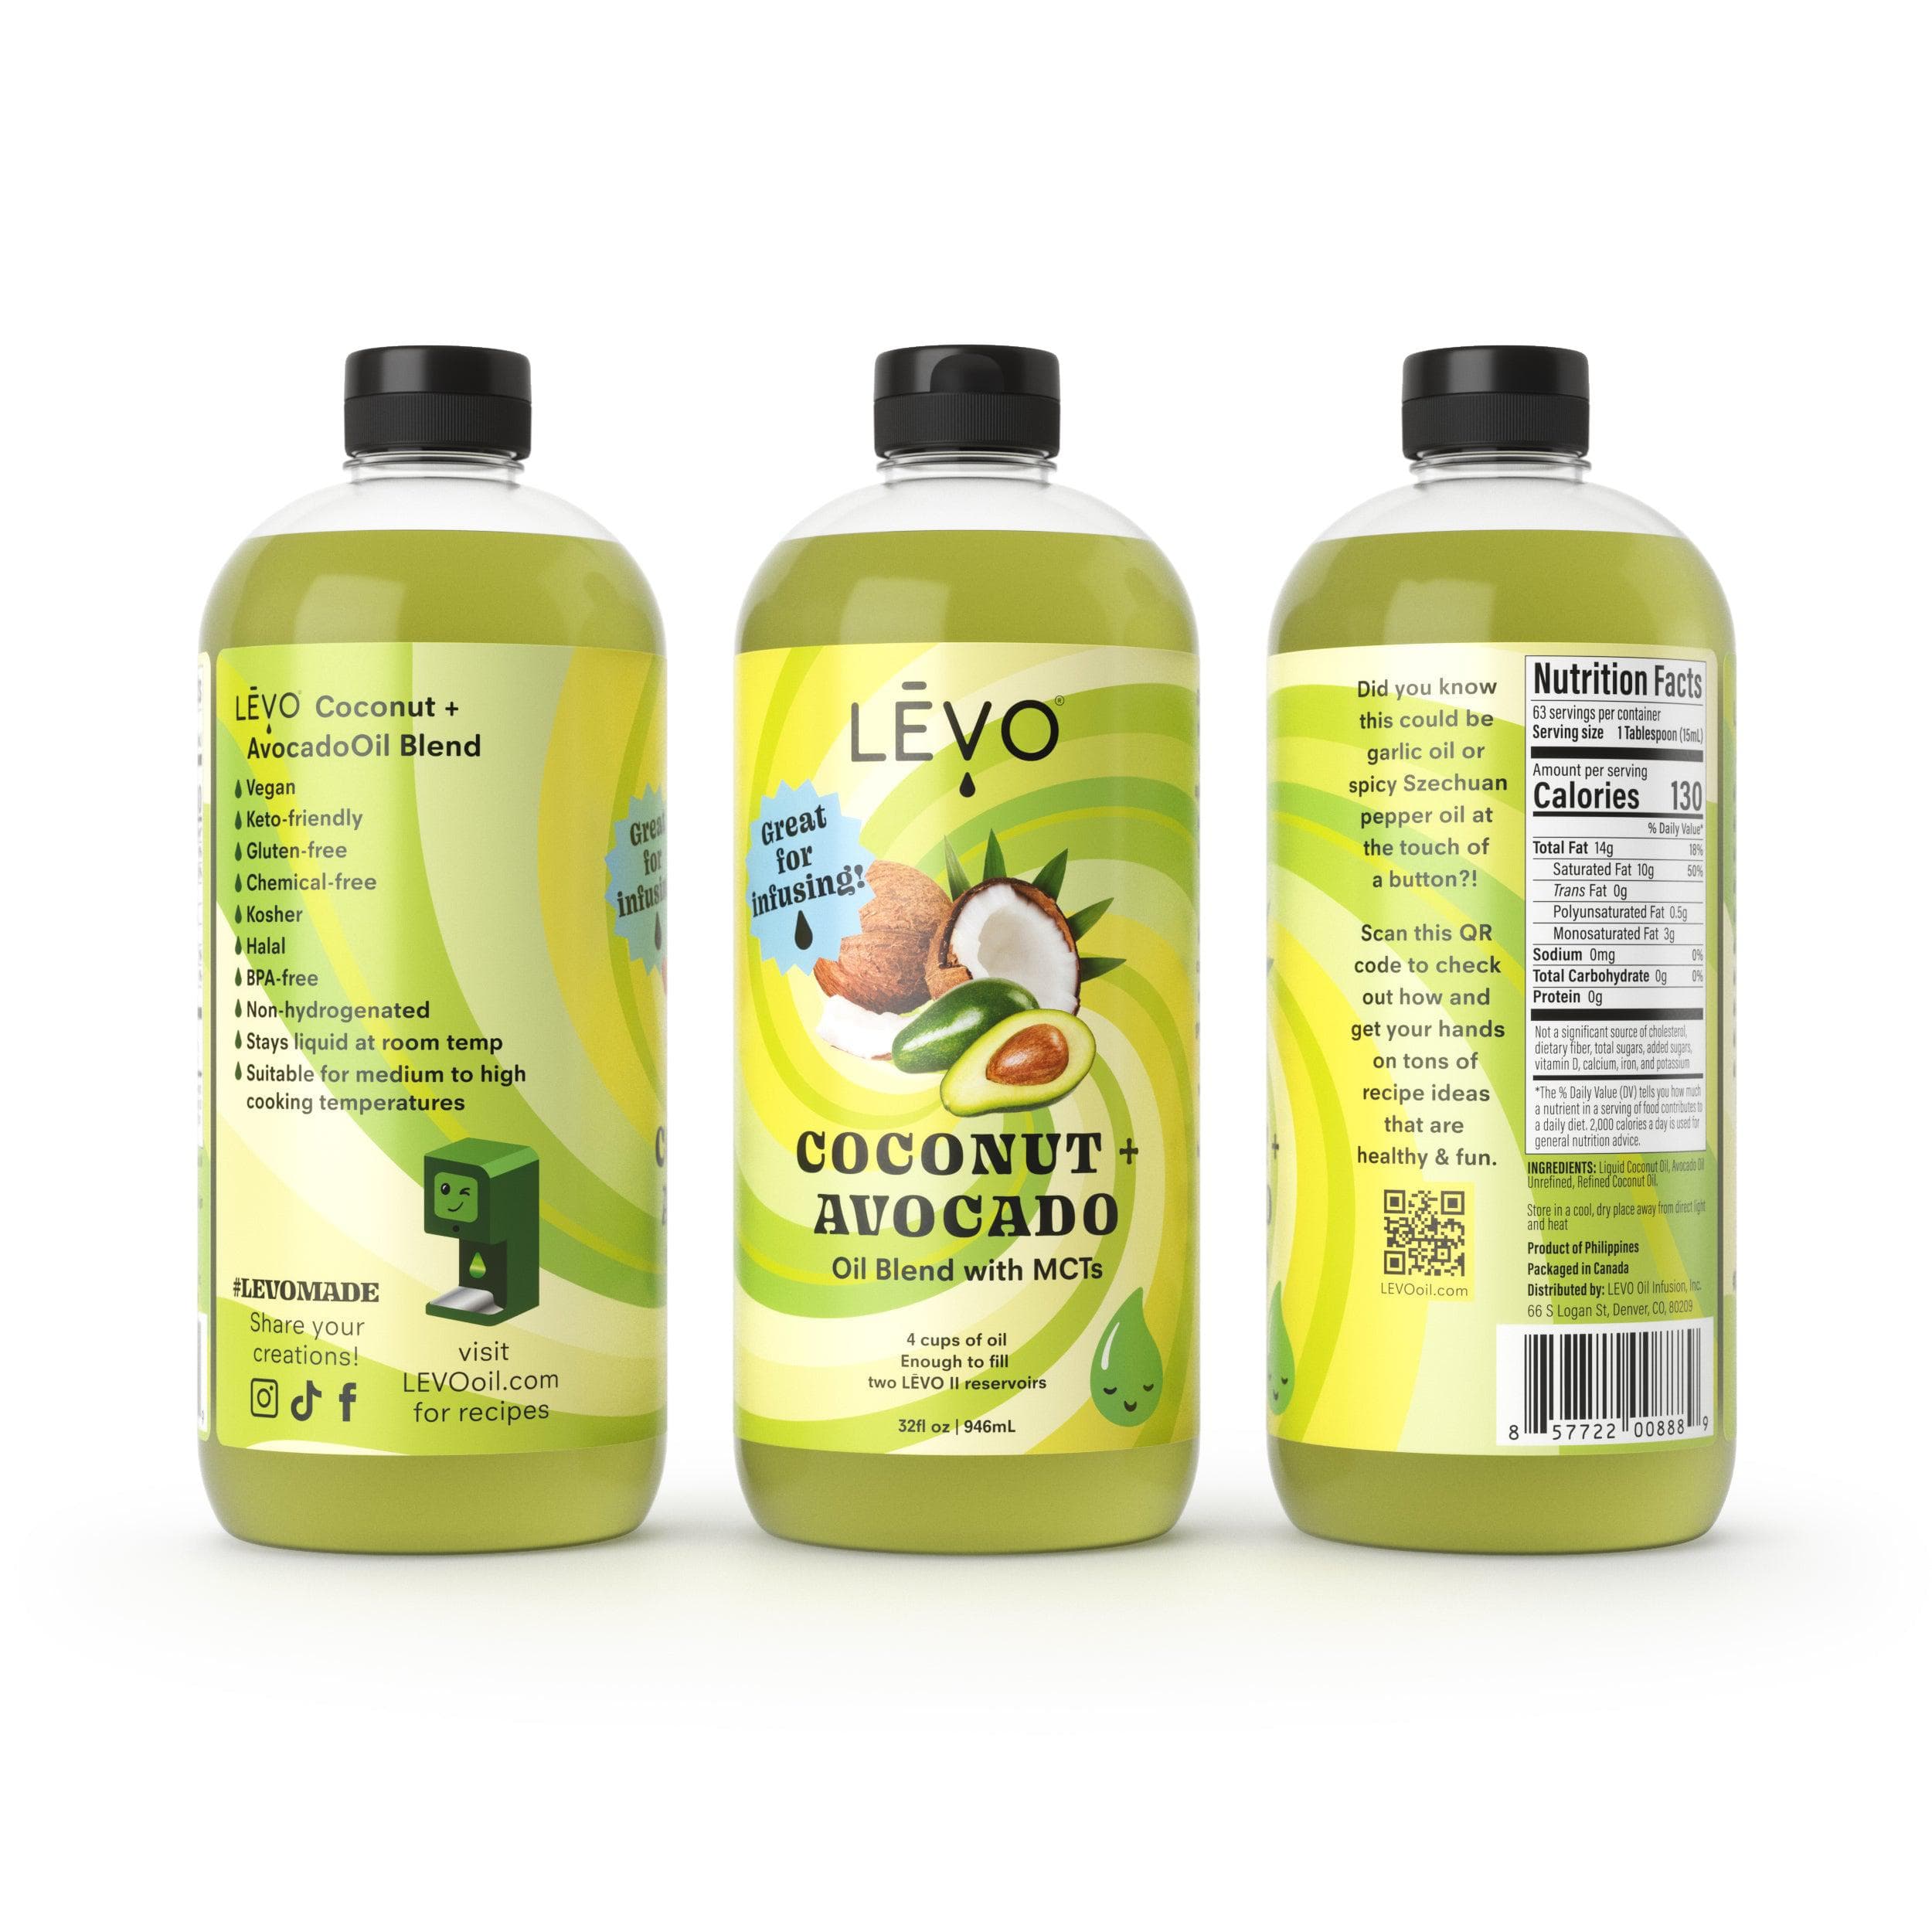 LEVO coconut avocado blend oil 32oz